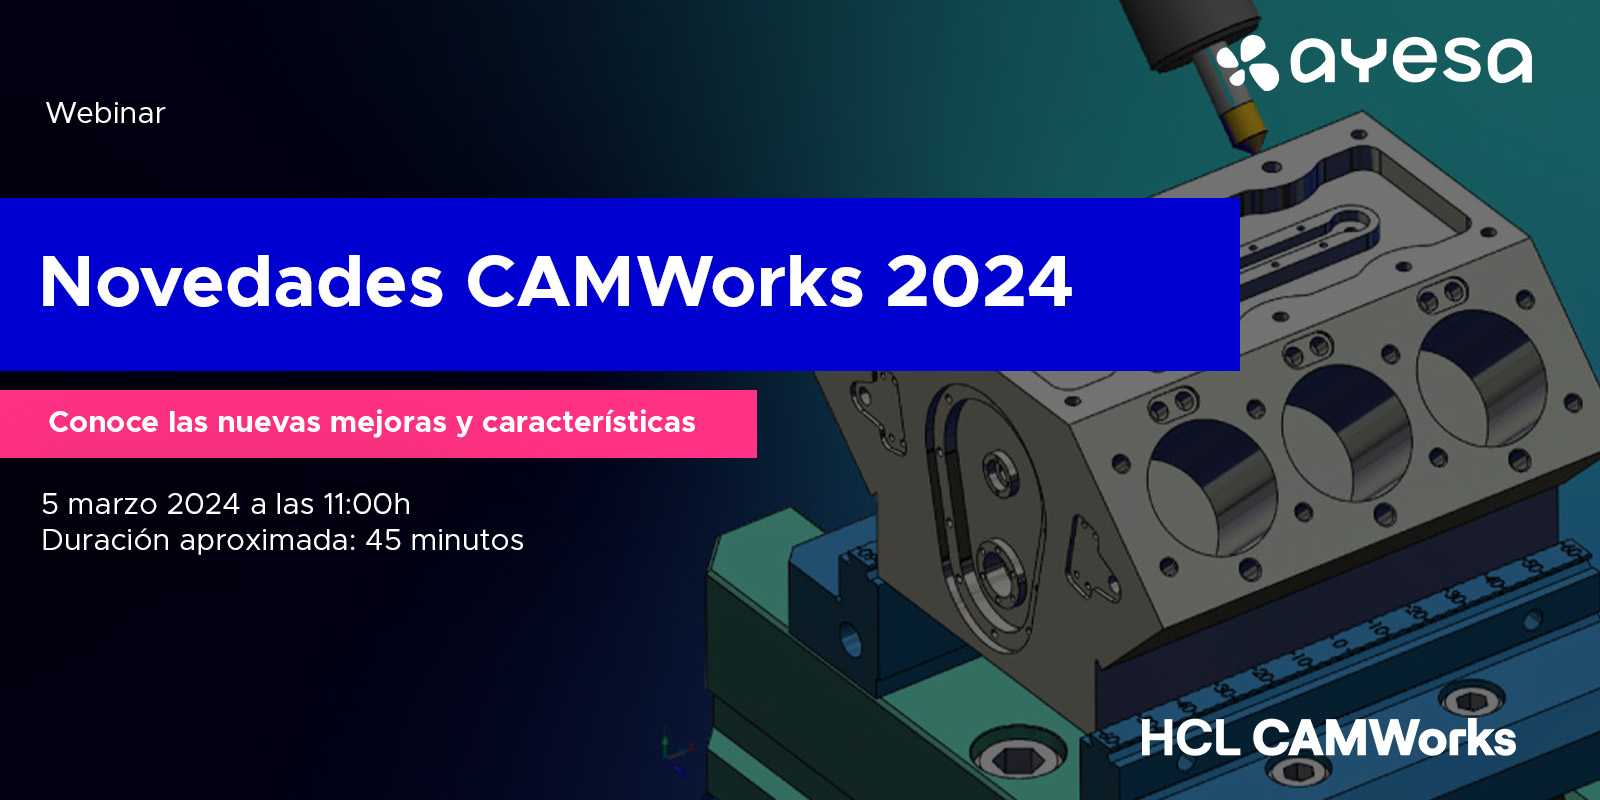 CAMWorks 2024